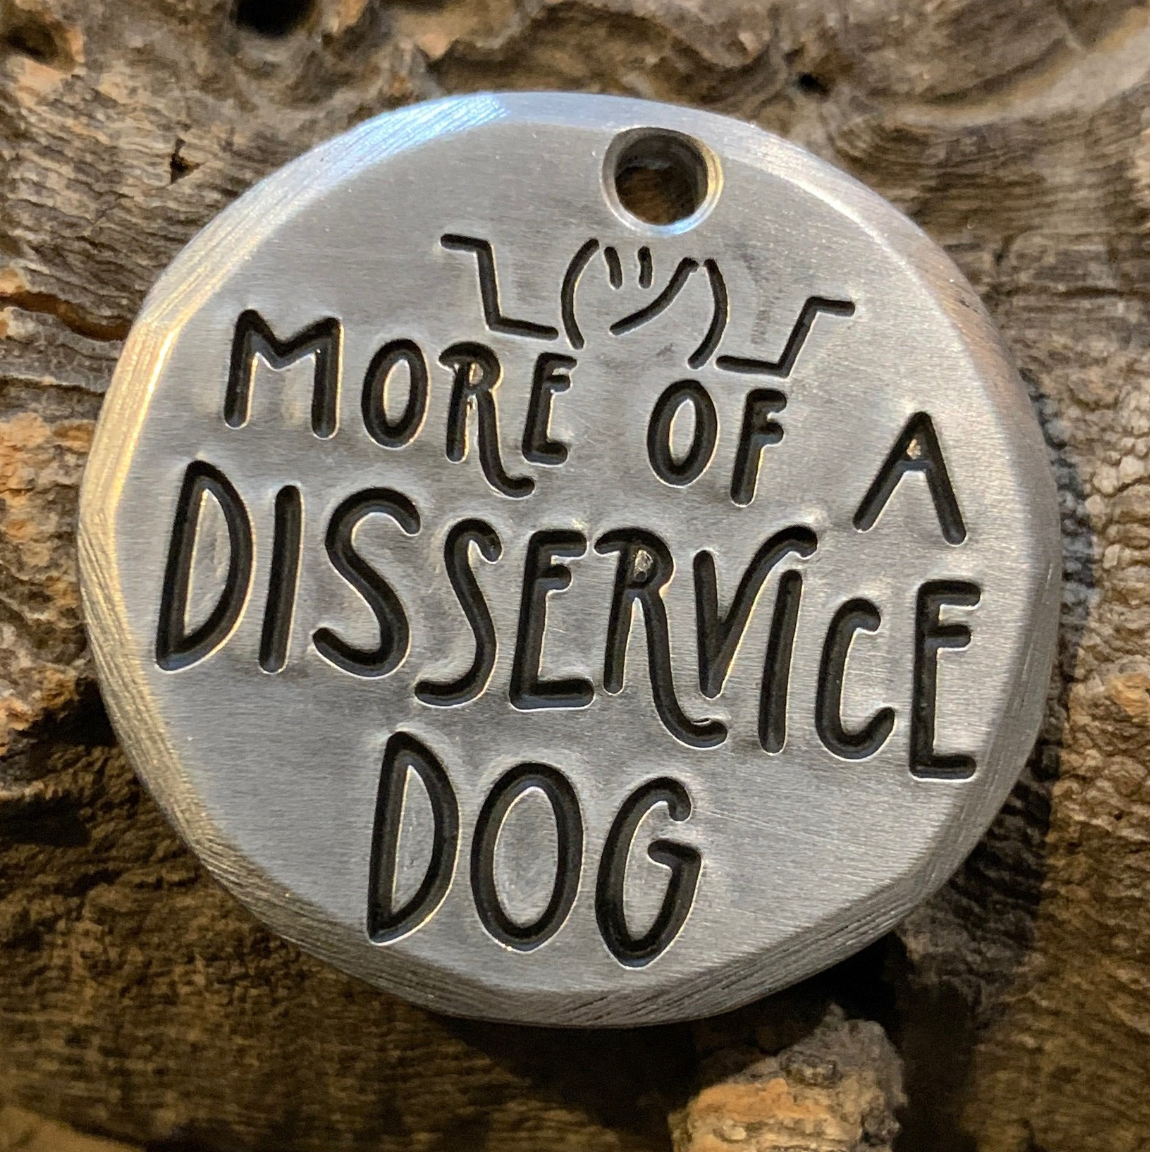 mto - disservice dog